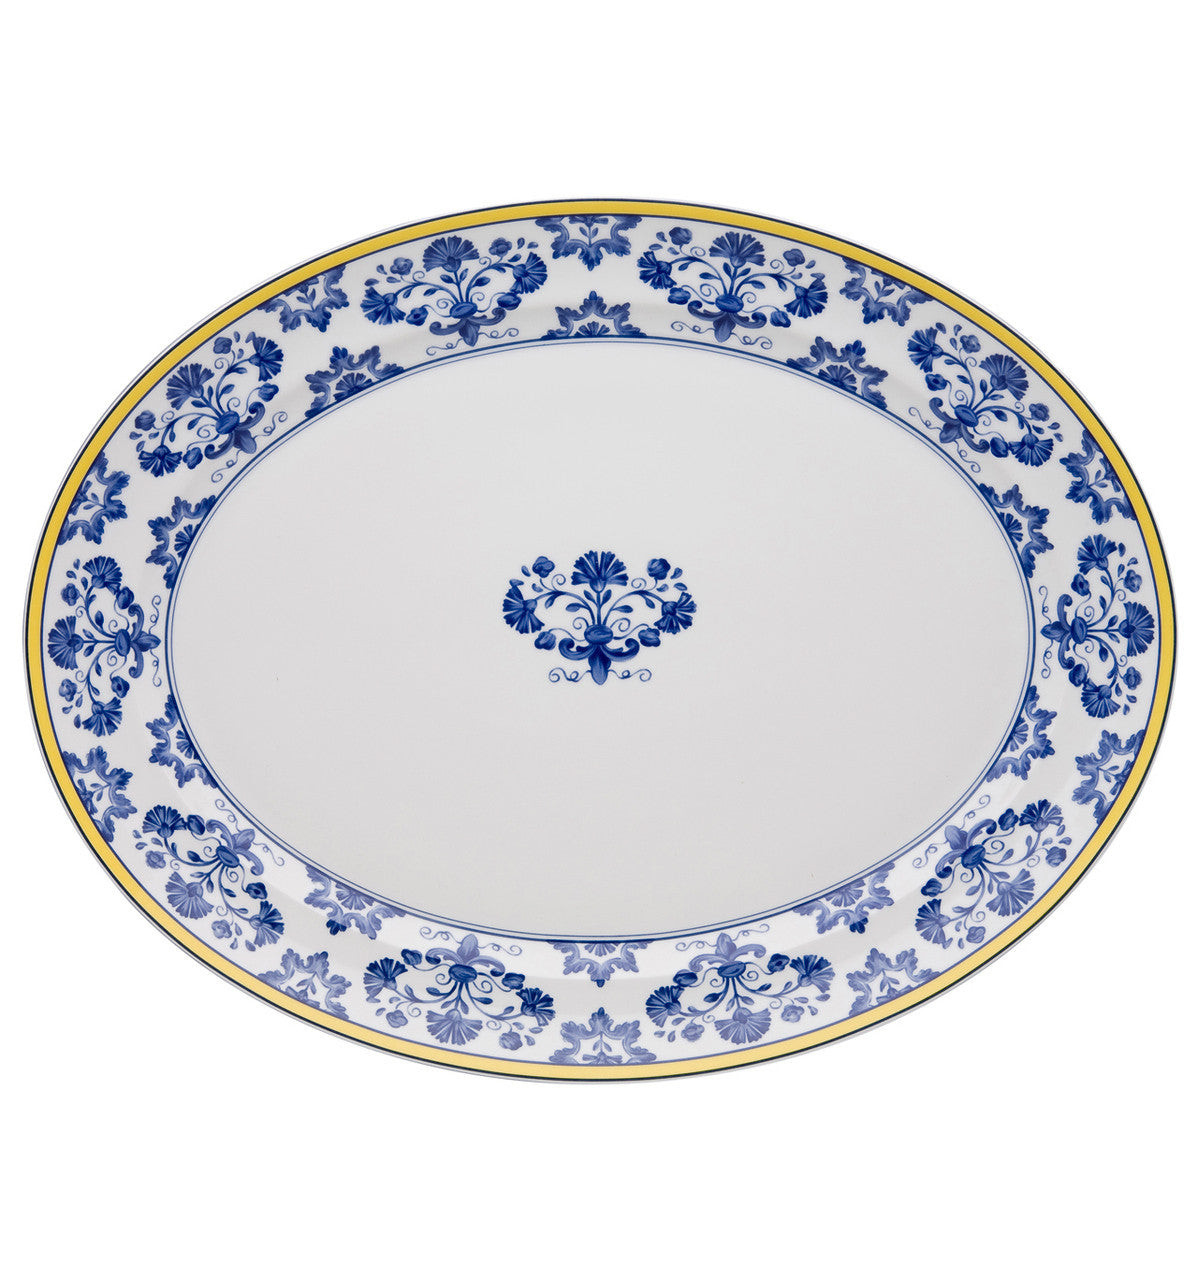 Castelo Branco Large Oval Platter - RSVP Style